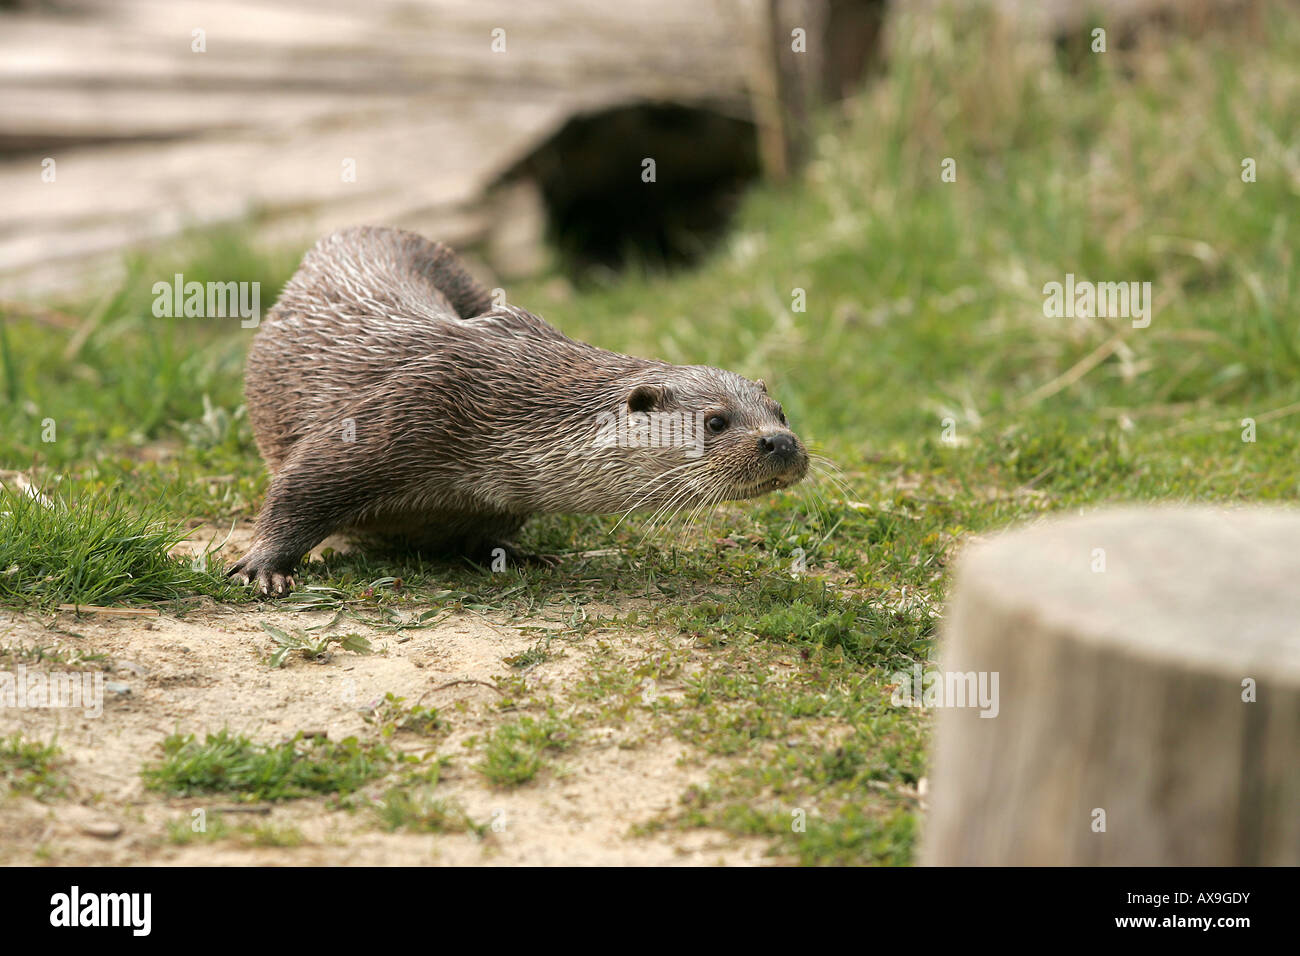 A European otter Stock Photo